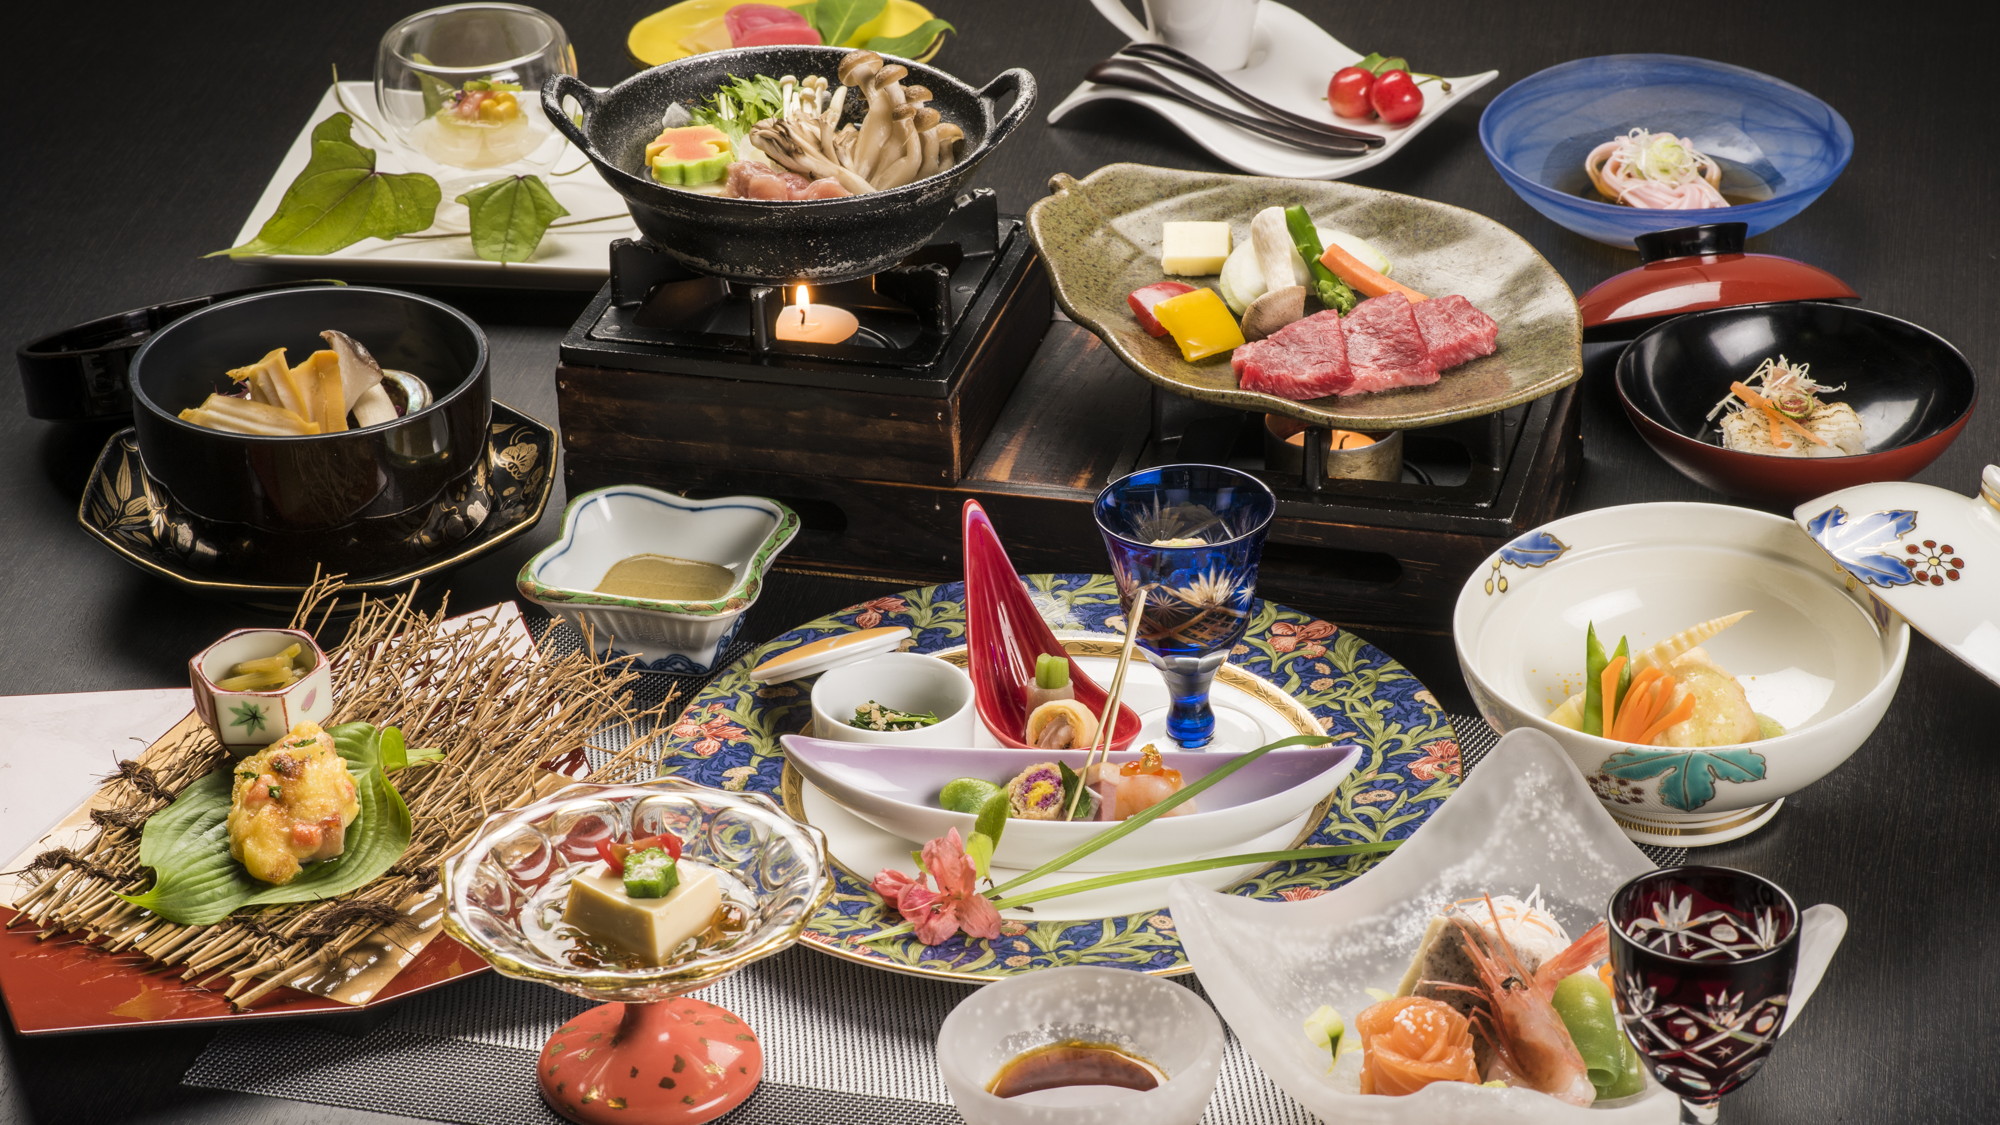 蔵王牛陶板ステーキをメインに季節の厳選食材を使用した「美食会席膳」